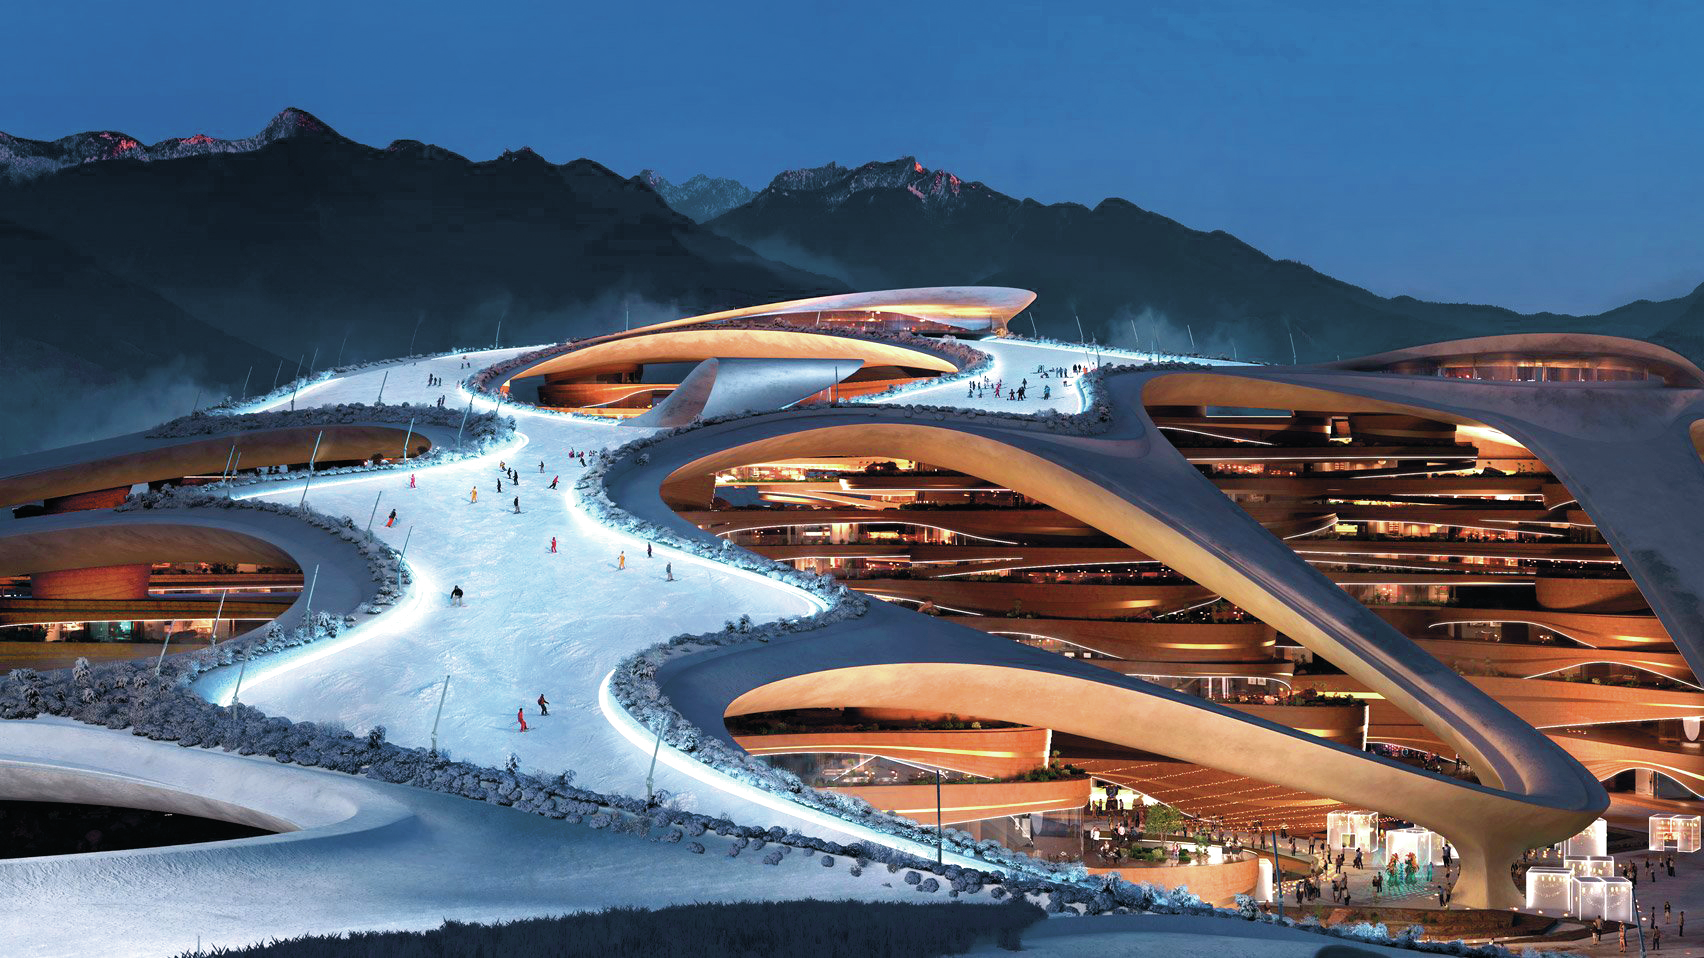 O luxuoso resort árabe que vai acolher os Jogos Olímpicos de inverno